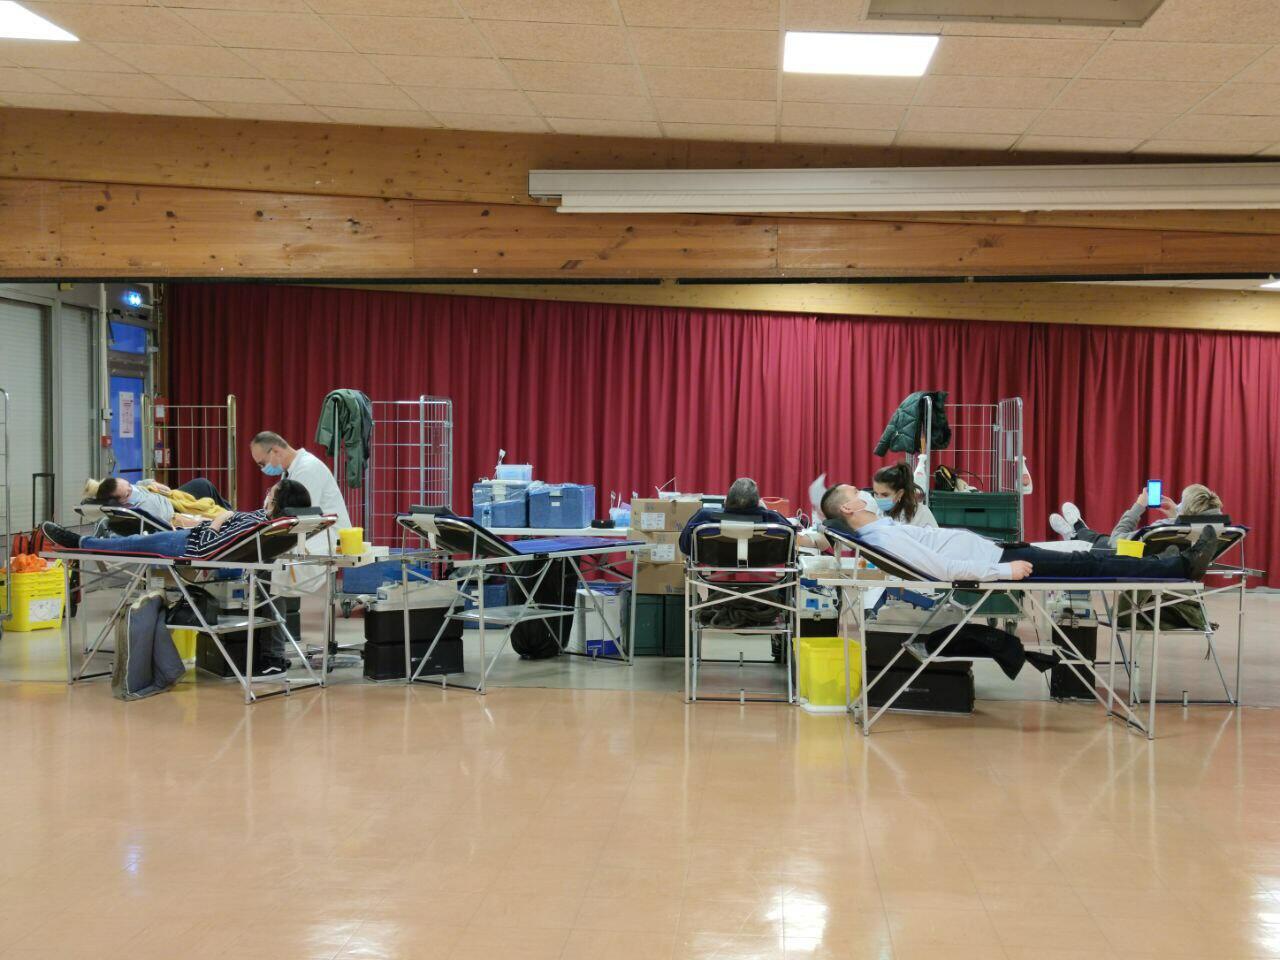 Bravo aux donneurs de sang qui ont participé à la collecte ce mardi 19 janvier !